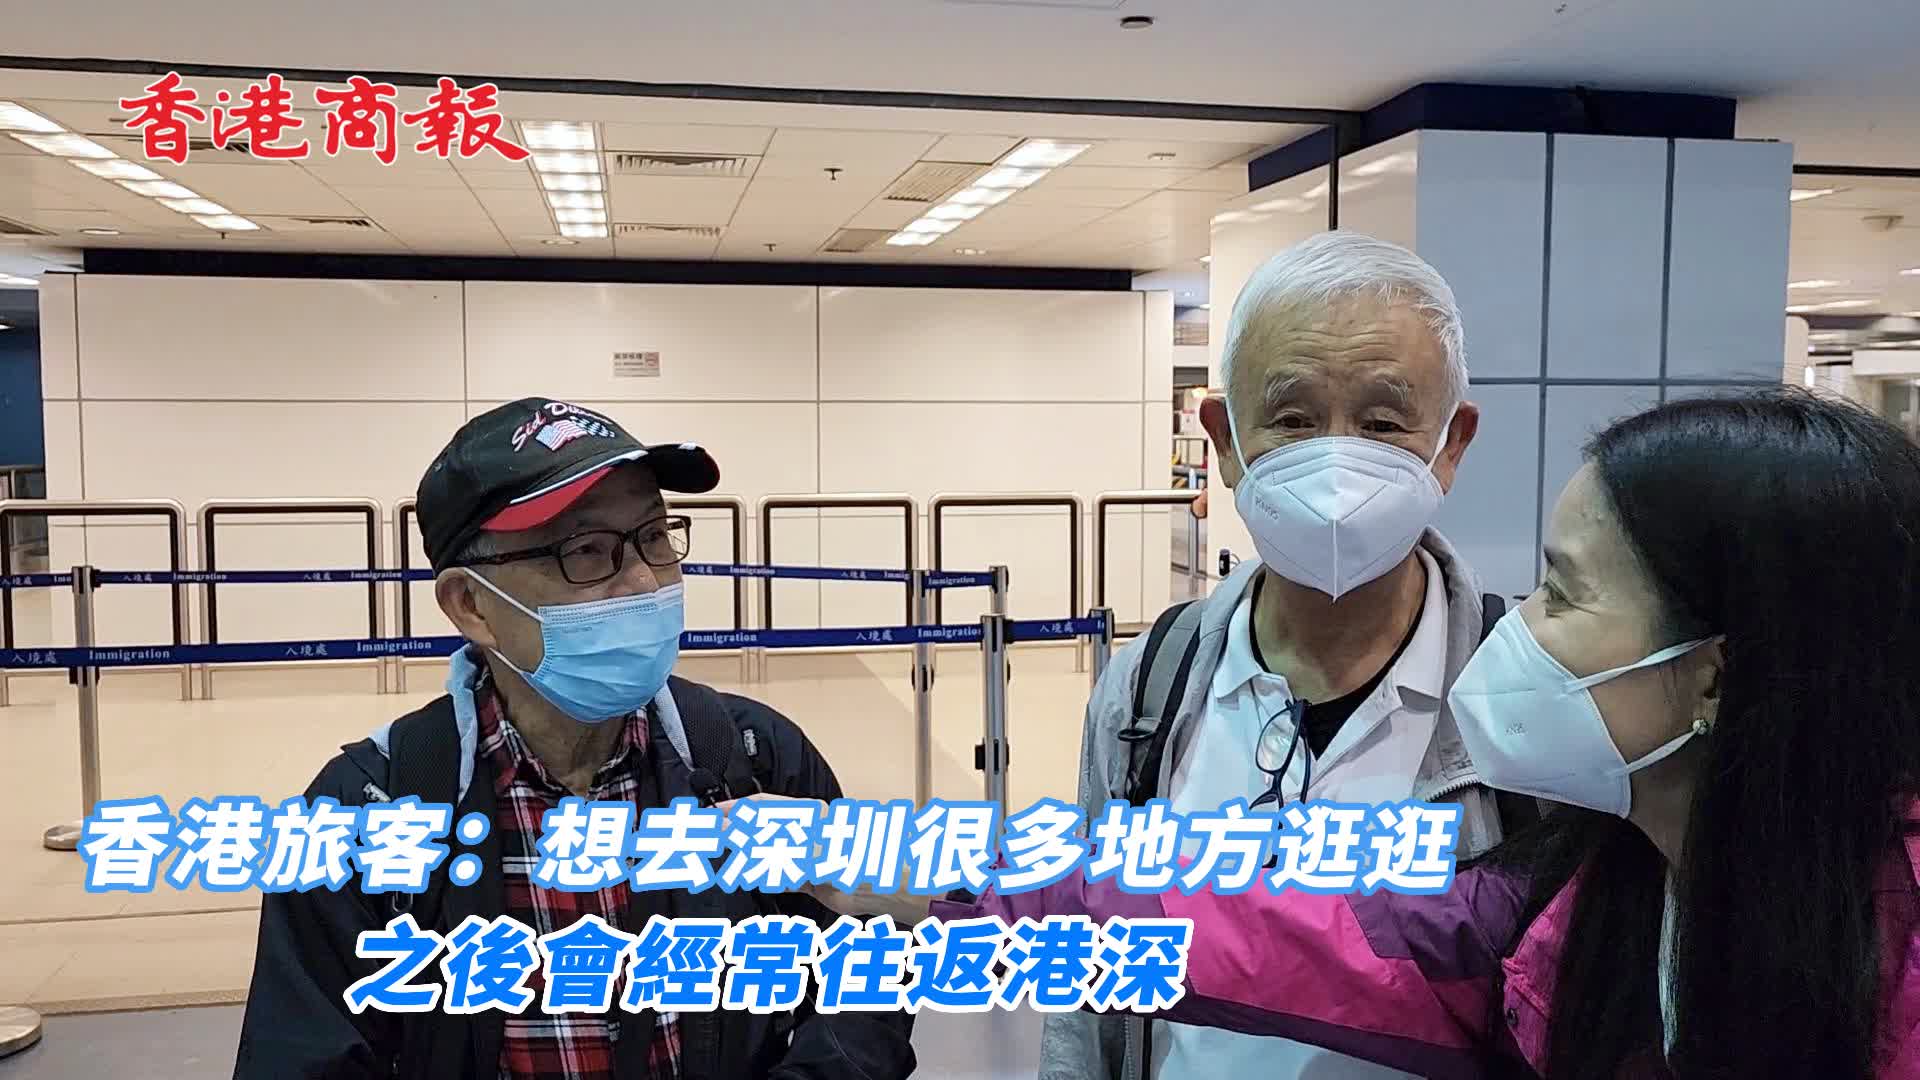 有片 | 香港旅客：想去深圳很多地方逛逛 之後會經常往返港深